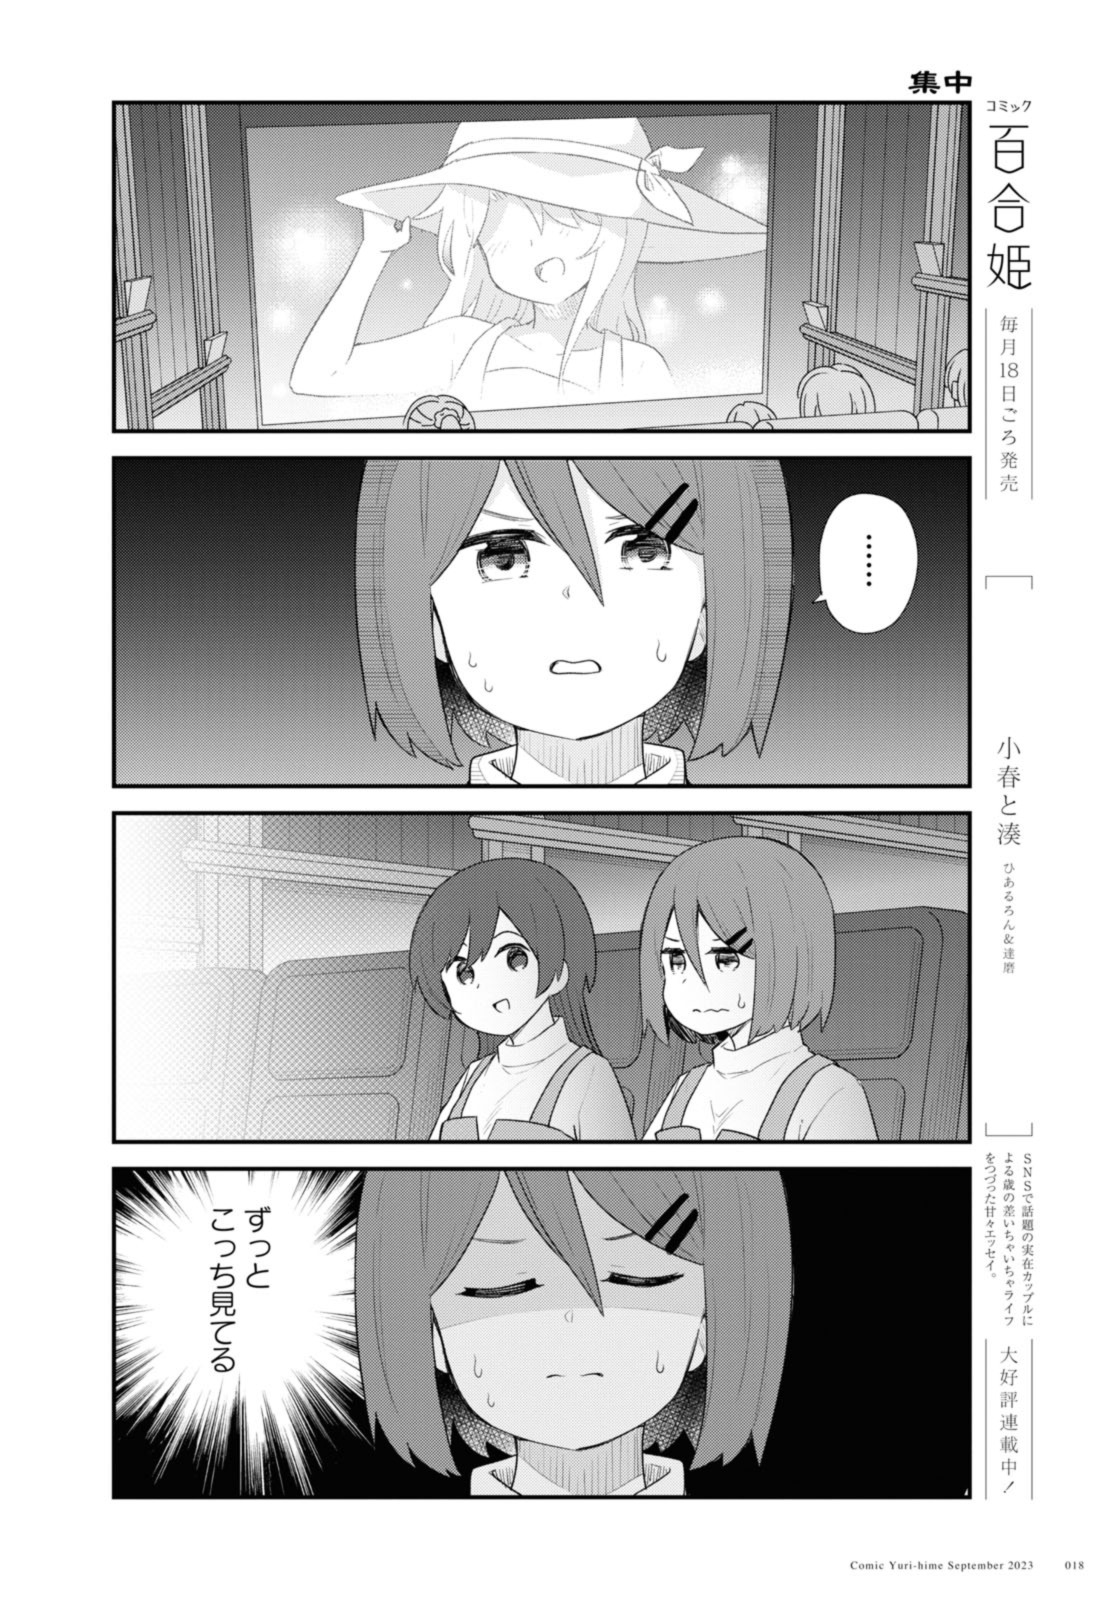 Watashi ni Tenshi ga Maiorita! - Chapter 108.2 - Page 2